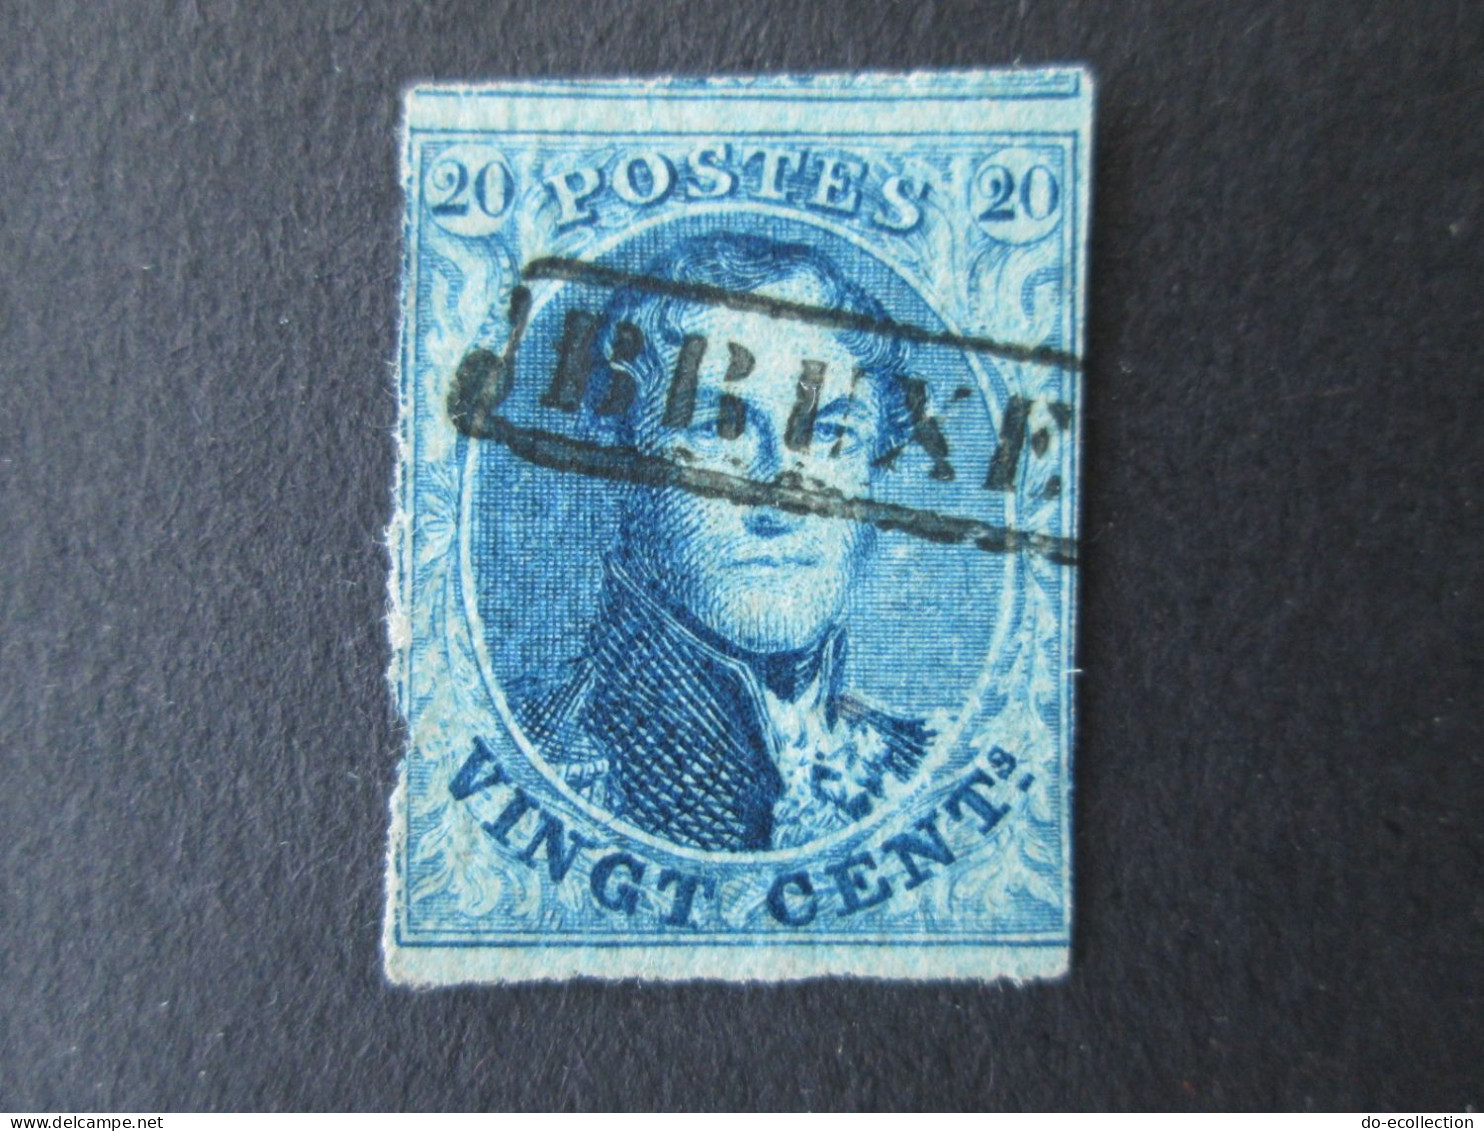 BELGIQUE 2 timbres Leopold I griffe encadrée Bruxelles 10c 20c Belgie Belgium timbre stamps